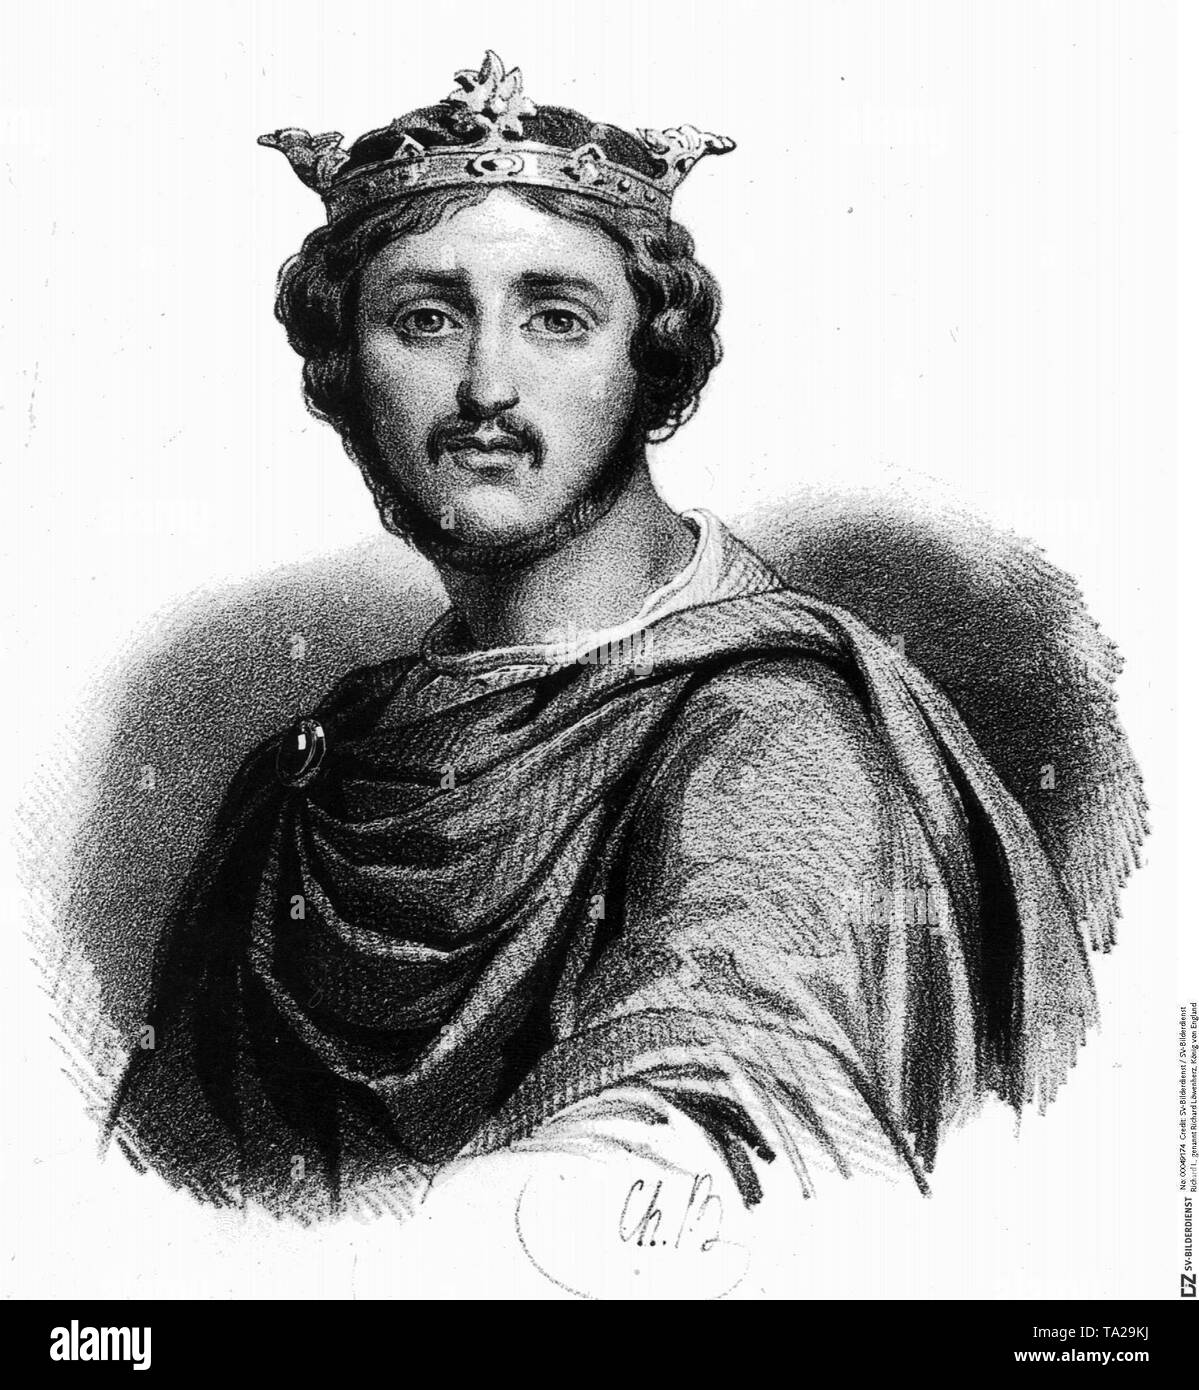 Richard I, noto come Riccardo Cuor di Leone, re d'Inghilterra dal 1189 al 1199. Foto Stock